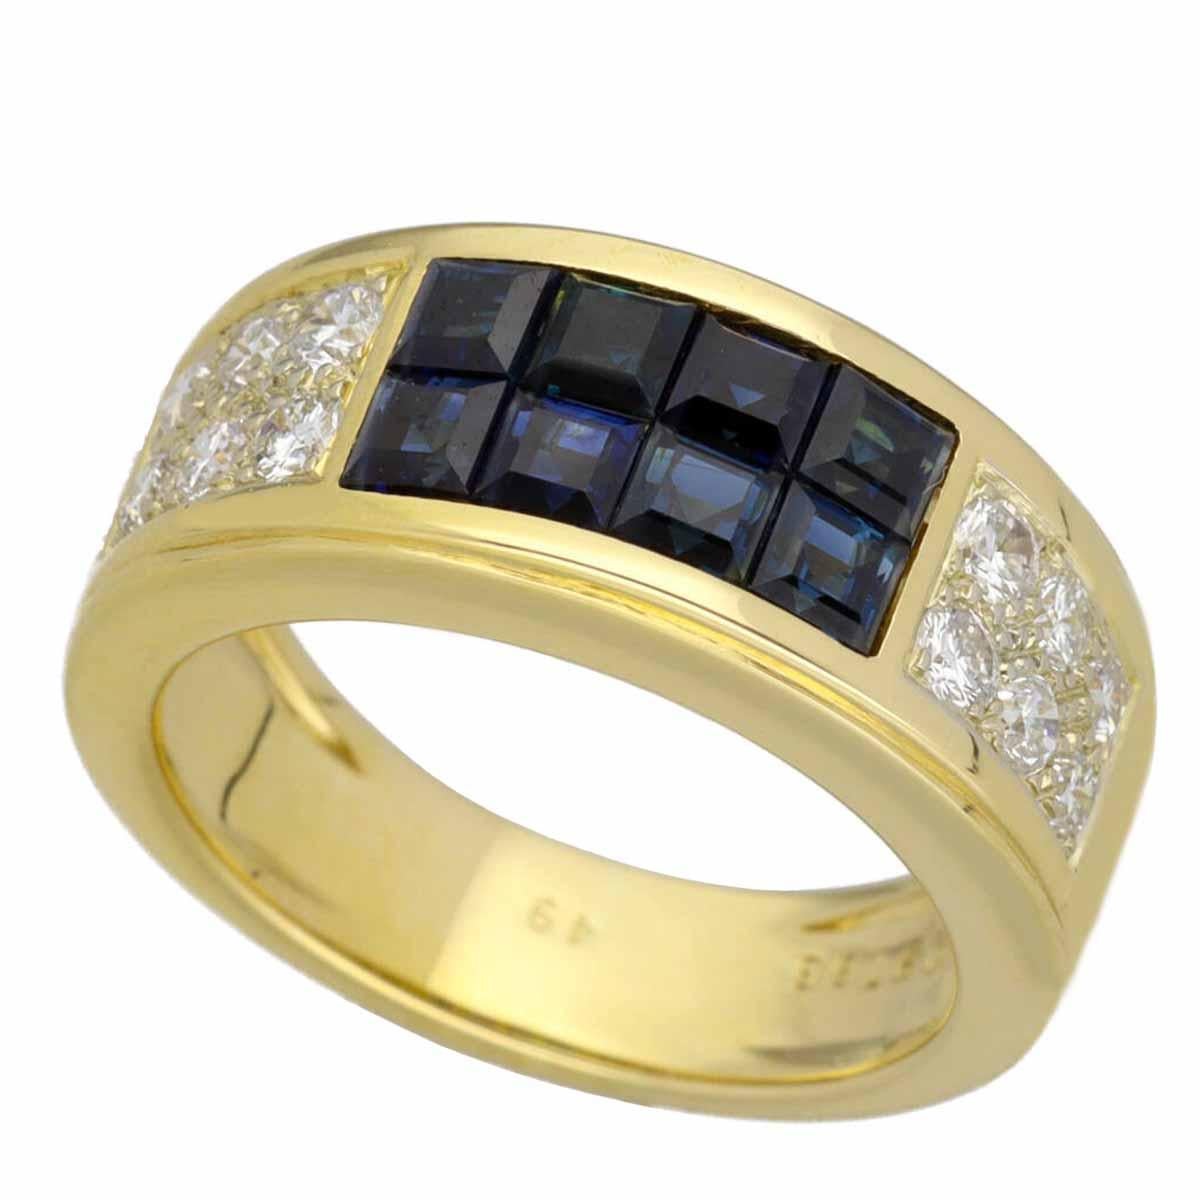 Cartier Bague en or jaune 18 carats avec diamants et saphirs bleus Diabolo, serti invisible